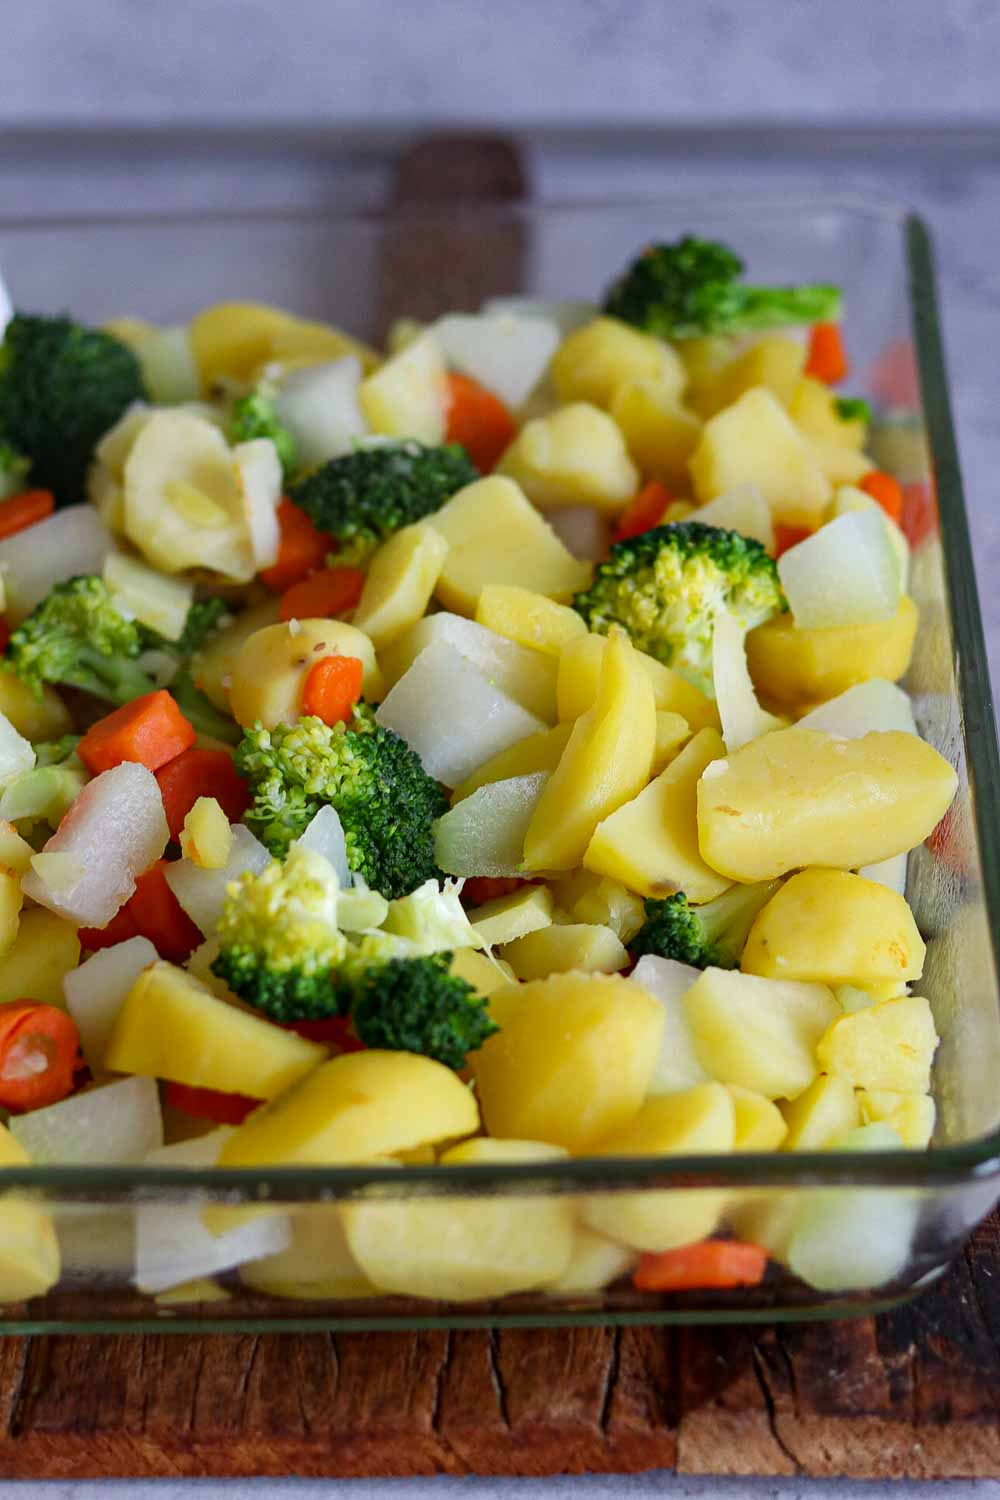 Schritt 3 Kartoffeln, Möhren, Brokkoli in Auflaufform für Gemüseauflauf, ohne Soße